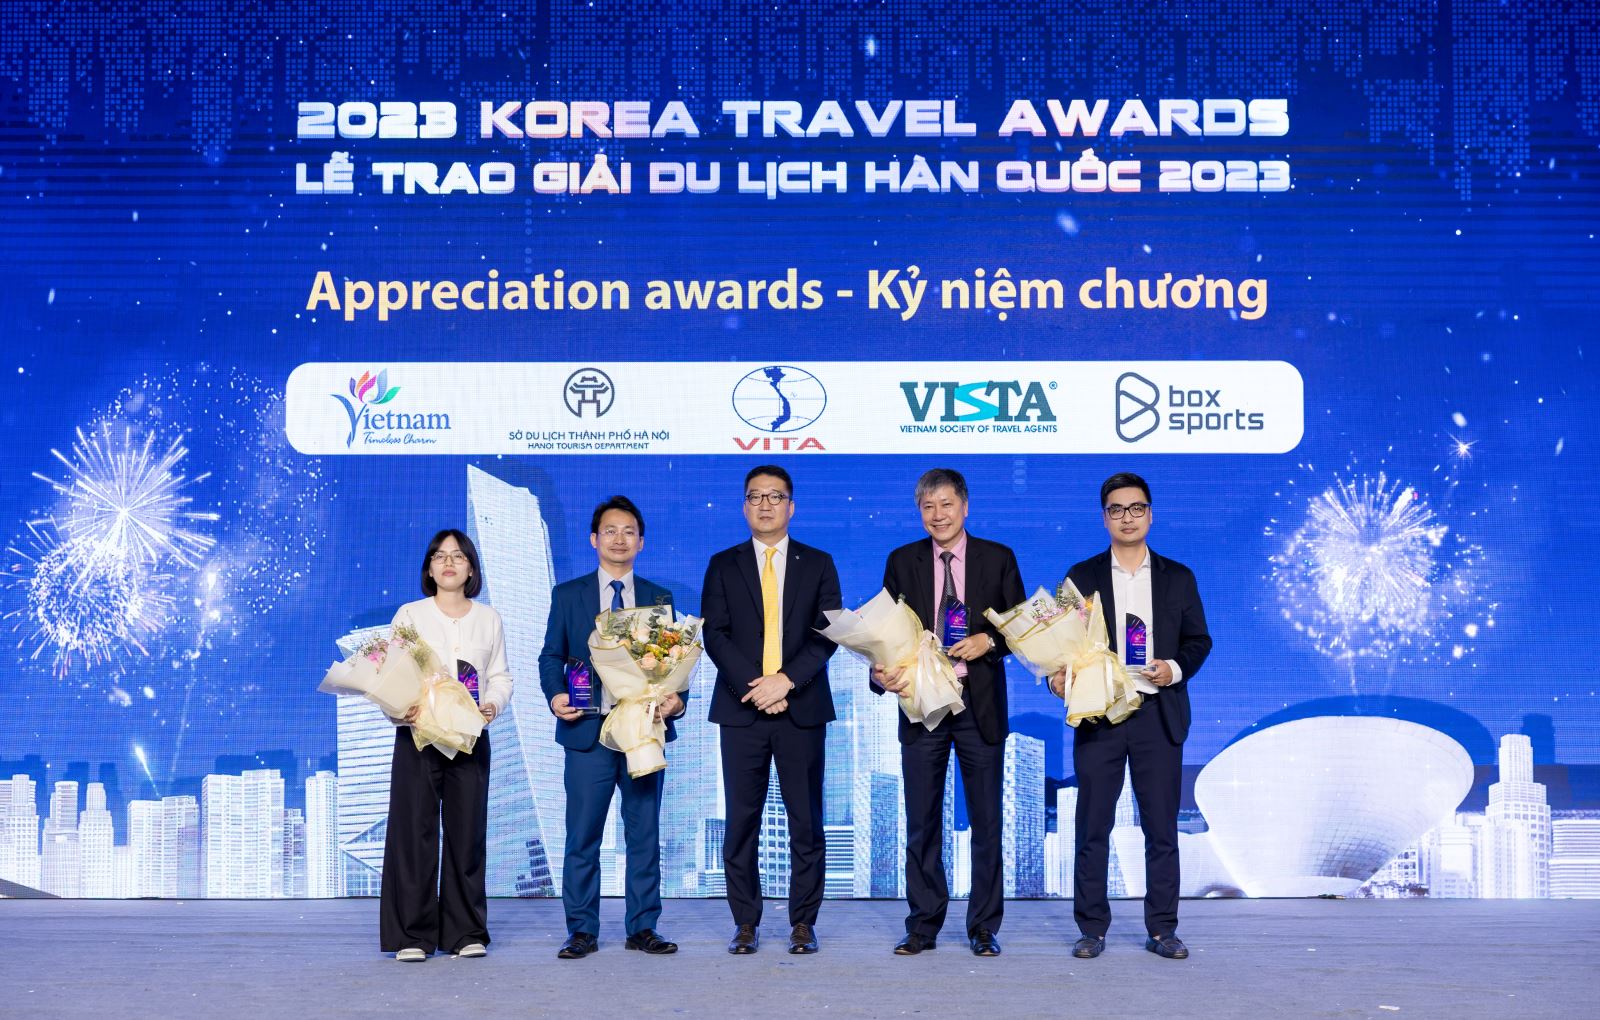 Lễ trao giải Du lịch Hàn Quốc 2023: Việt Nam là thị trường khách hàng đầu Đông Nam Á đến Hàn Quốc - Ảnh 1.